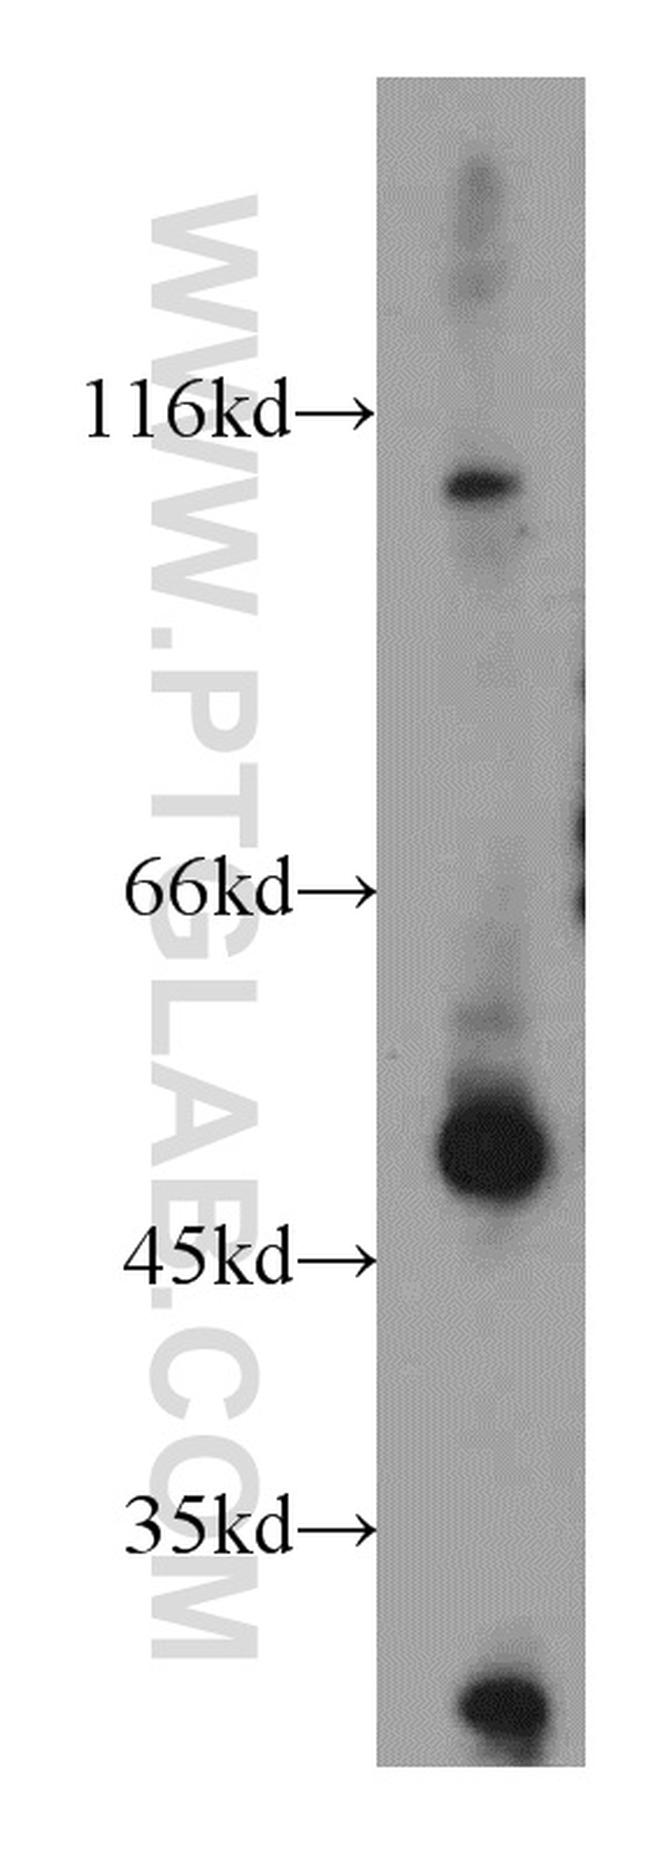 CXCR7 Antibody in Western Blot (WB)